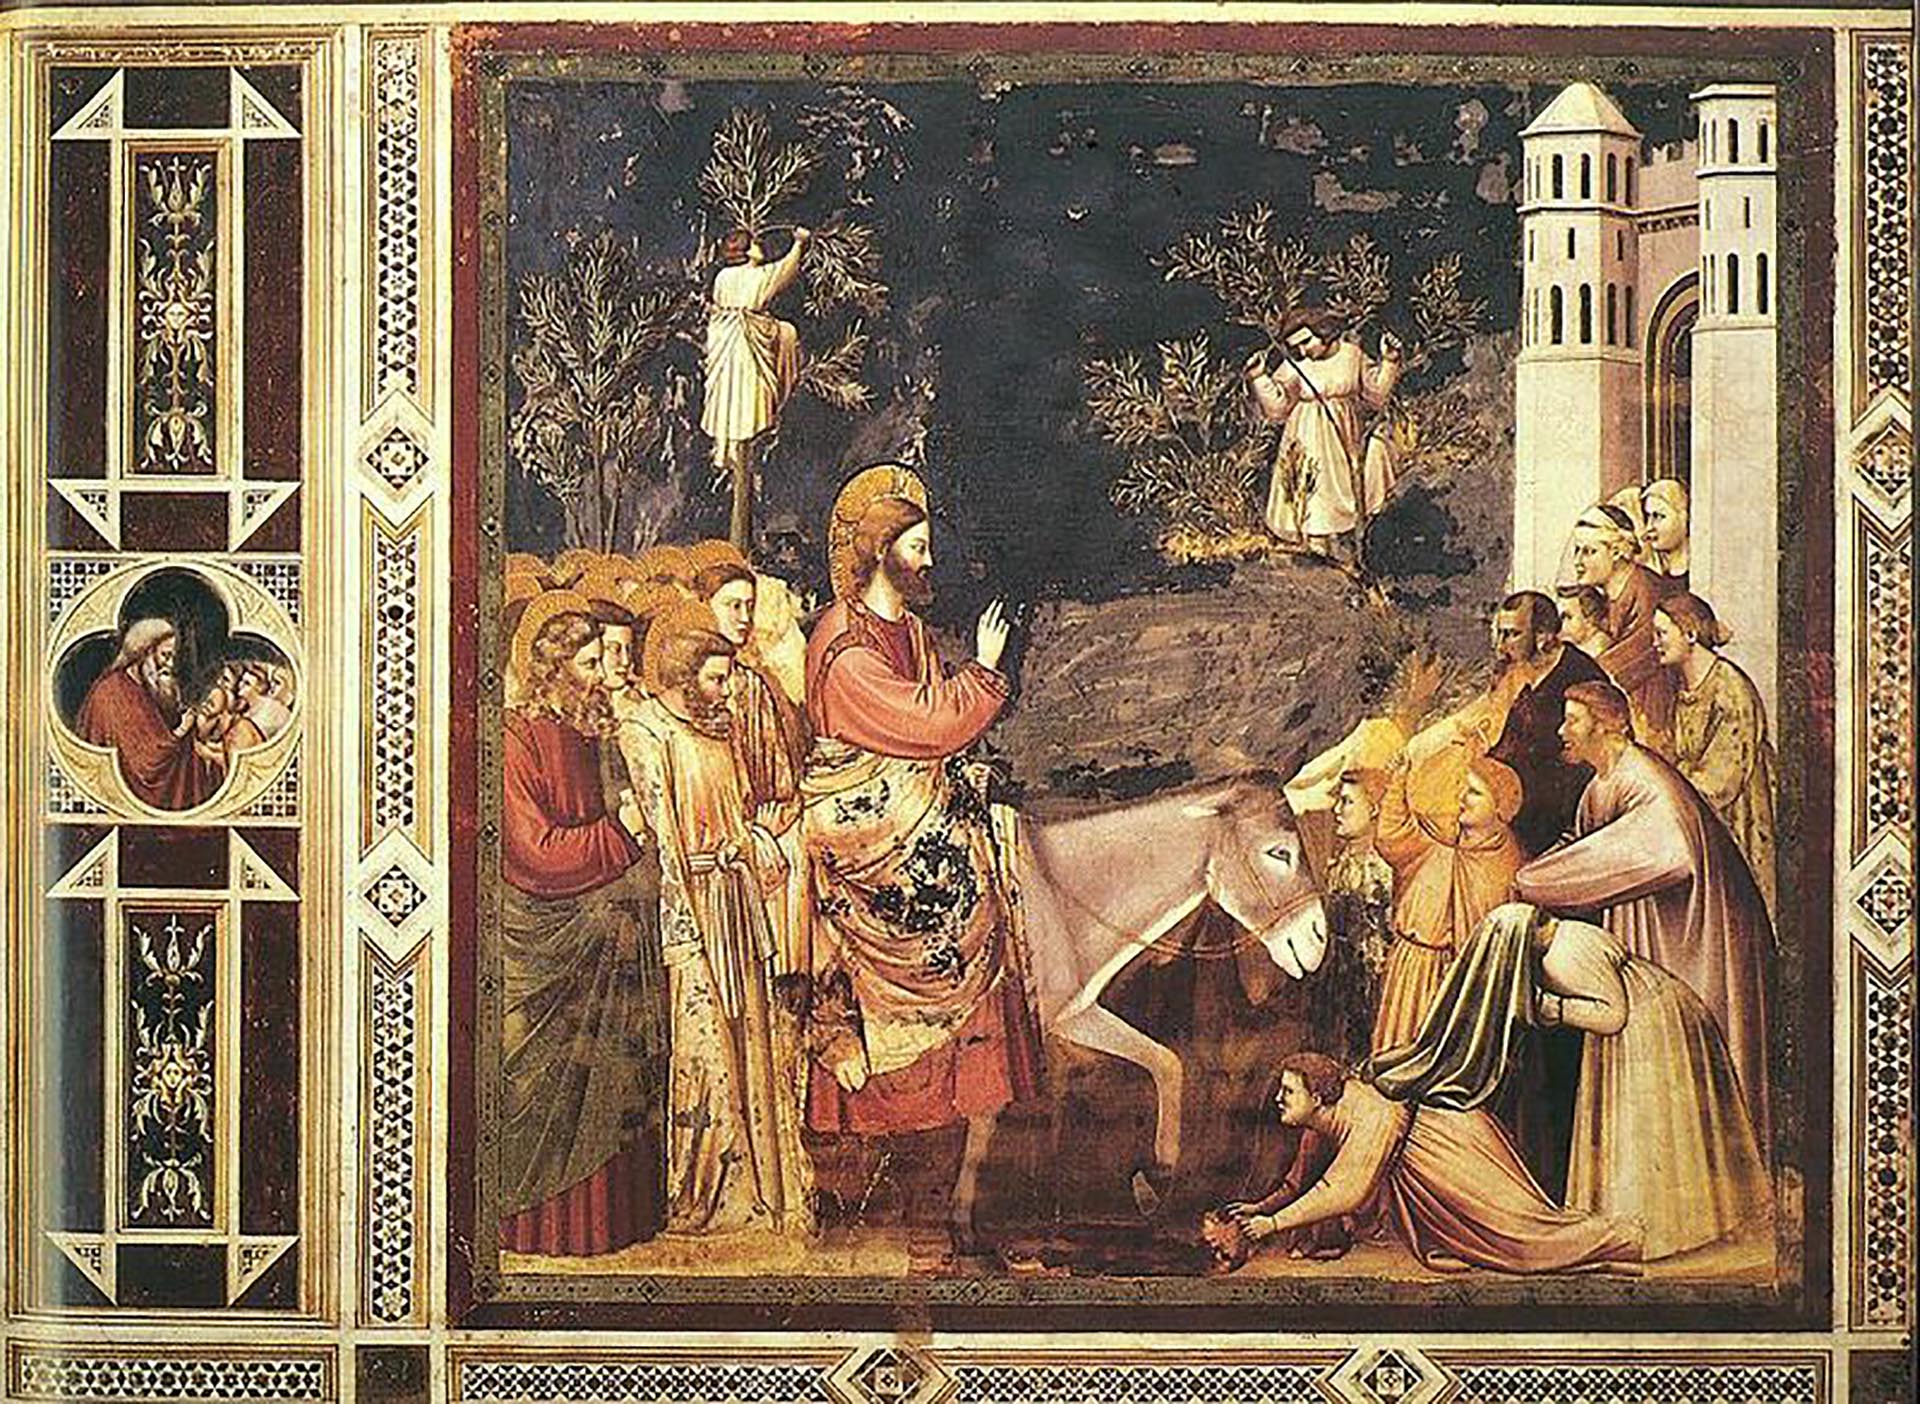 Un fresco de Giotto, hecho en el siglo IV, que retrata el ingreso de Jesús a Jerusalén. El Domingo de Ramos es una de las más importantes fechas de la Liturgia católica